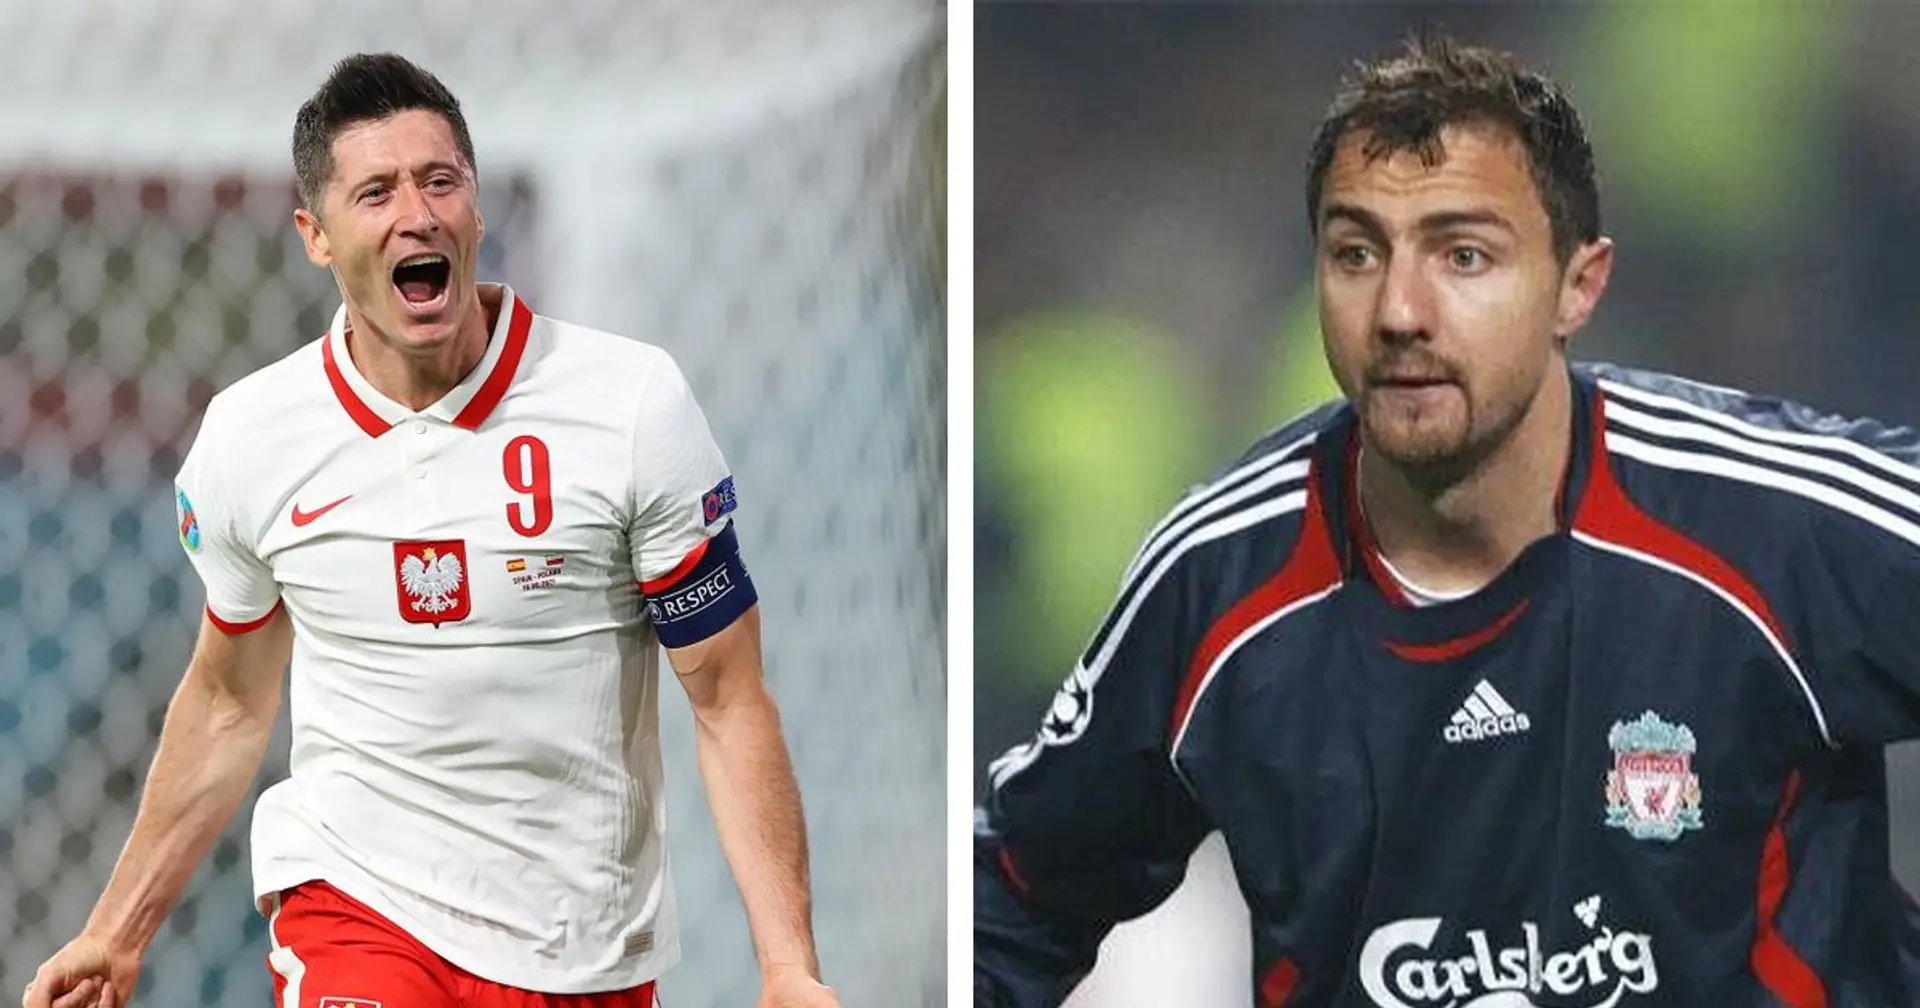 Ex-Polen-Spieler Dudek: "Lewandowski ist die beste Neun. Aber das ist bei Bayern, in Polen ist er ein anderer Spieler"